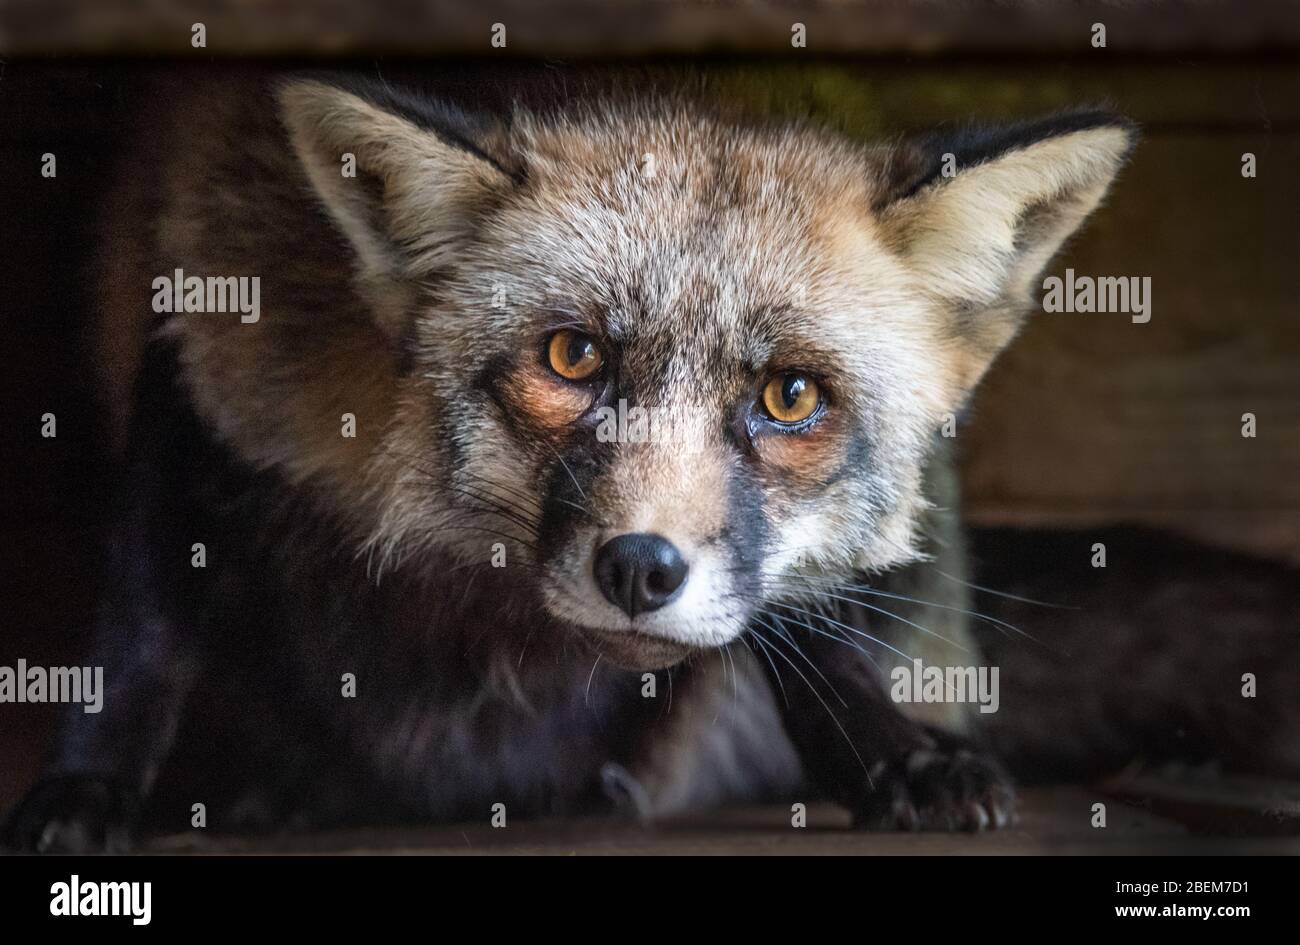 Ein sehr nahes Porträt von Kopf und Gesicht eines Fuchses. Sie starrt neugierig mit weit geöffneten Augen direkt auf die Kamera Stockfoto